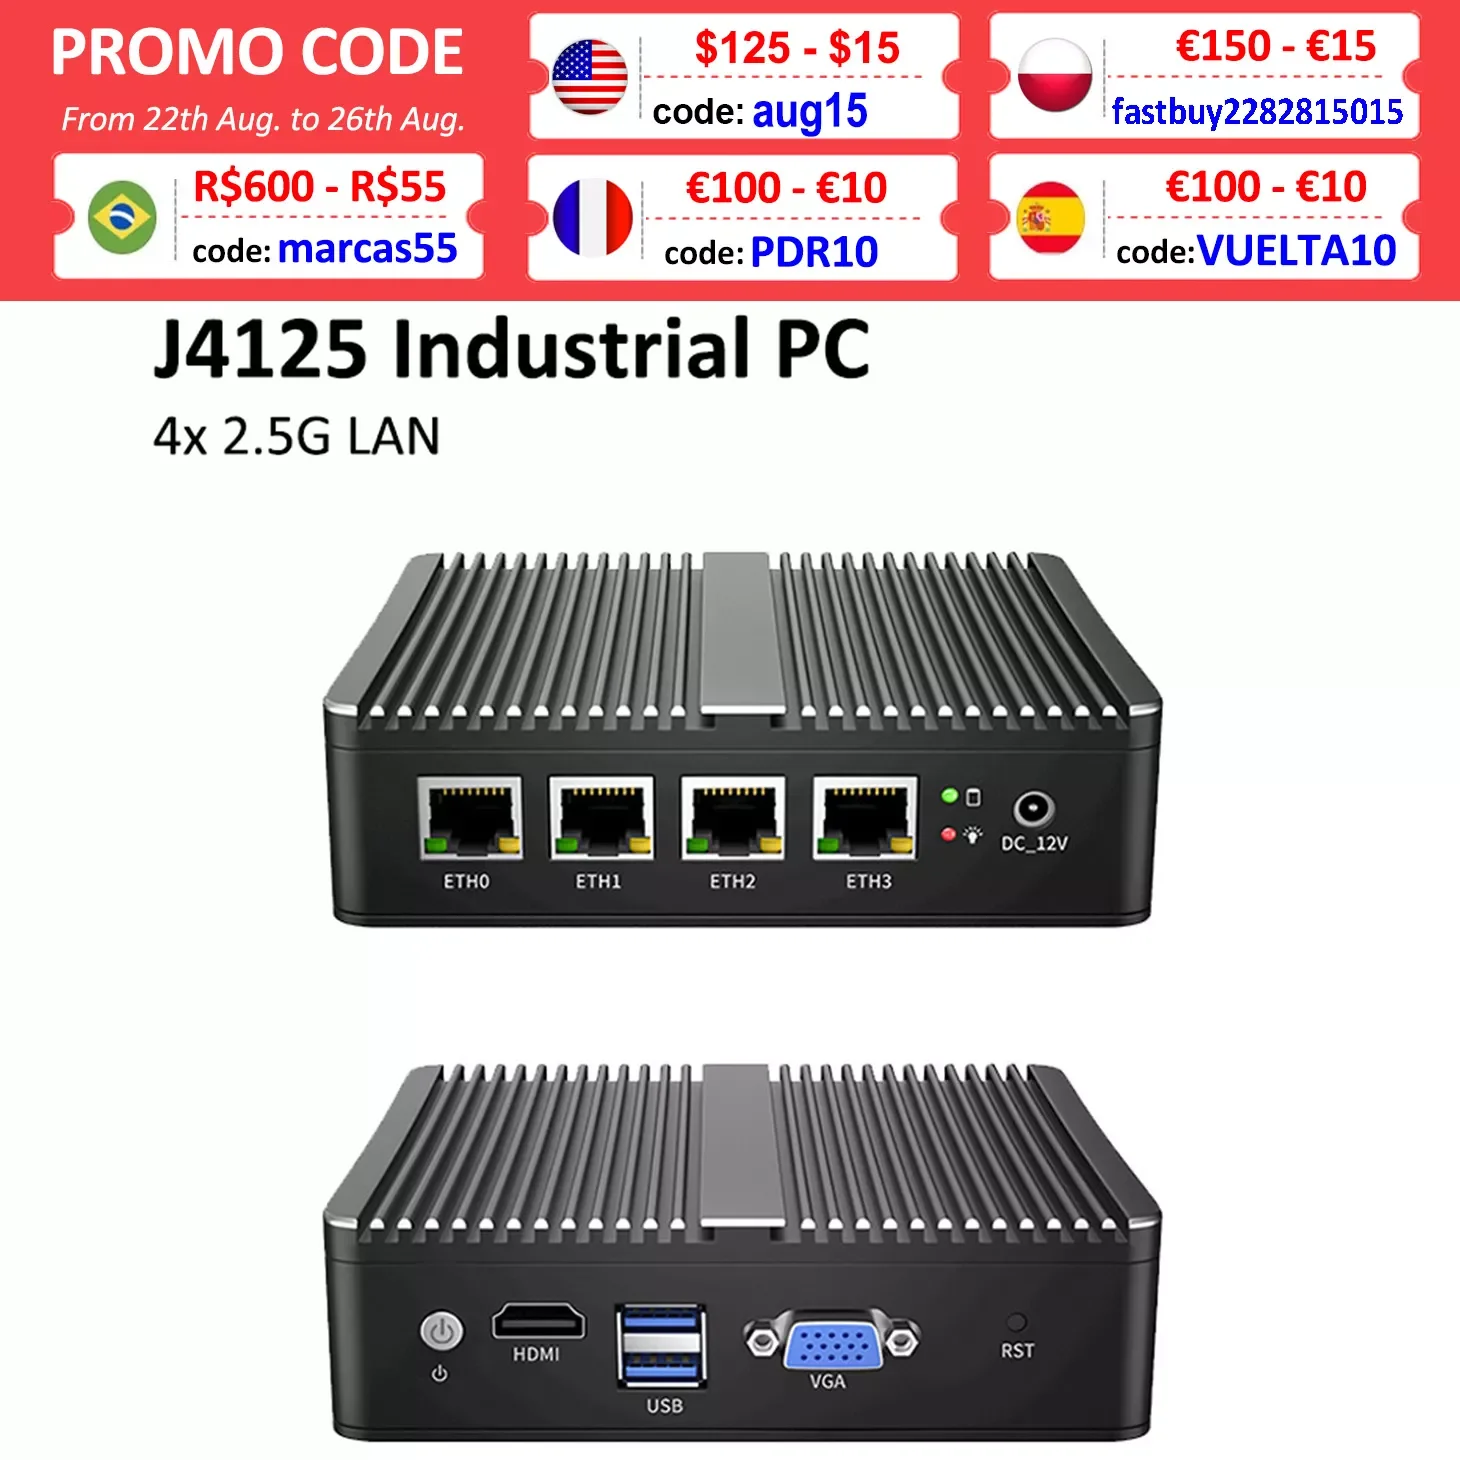 

Fanless Soft Router Intel Celeron J4125 Mini PC Quad Core 4x Intel i225 2.5G LAN HDMI VGA pfSense Firewall Appliance ESXI AES-NI